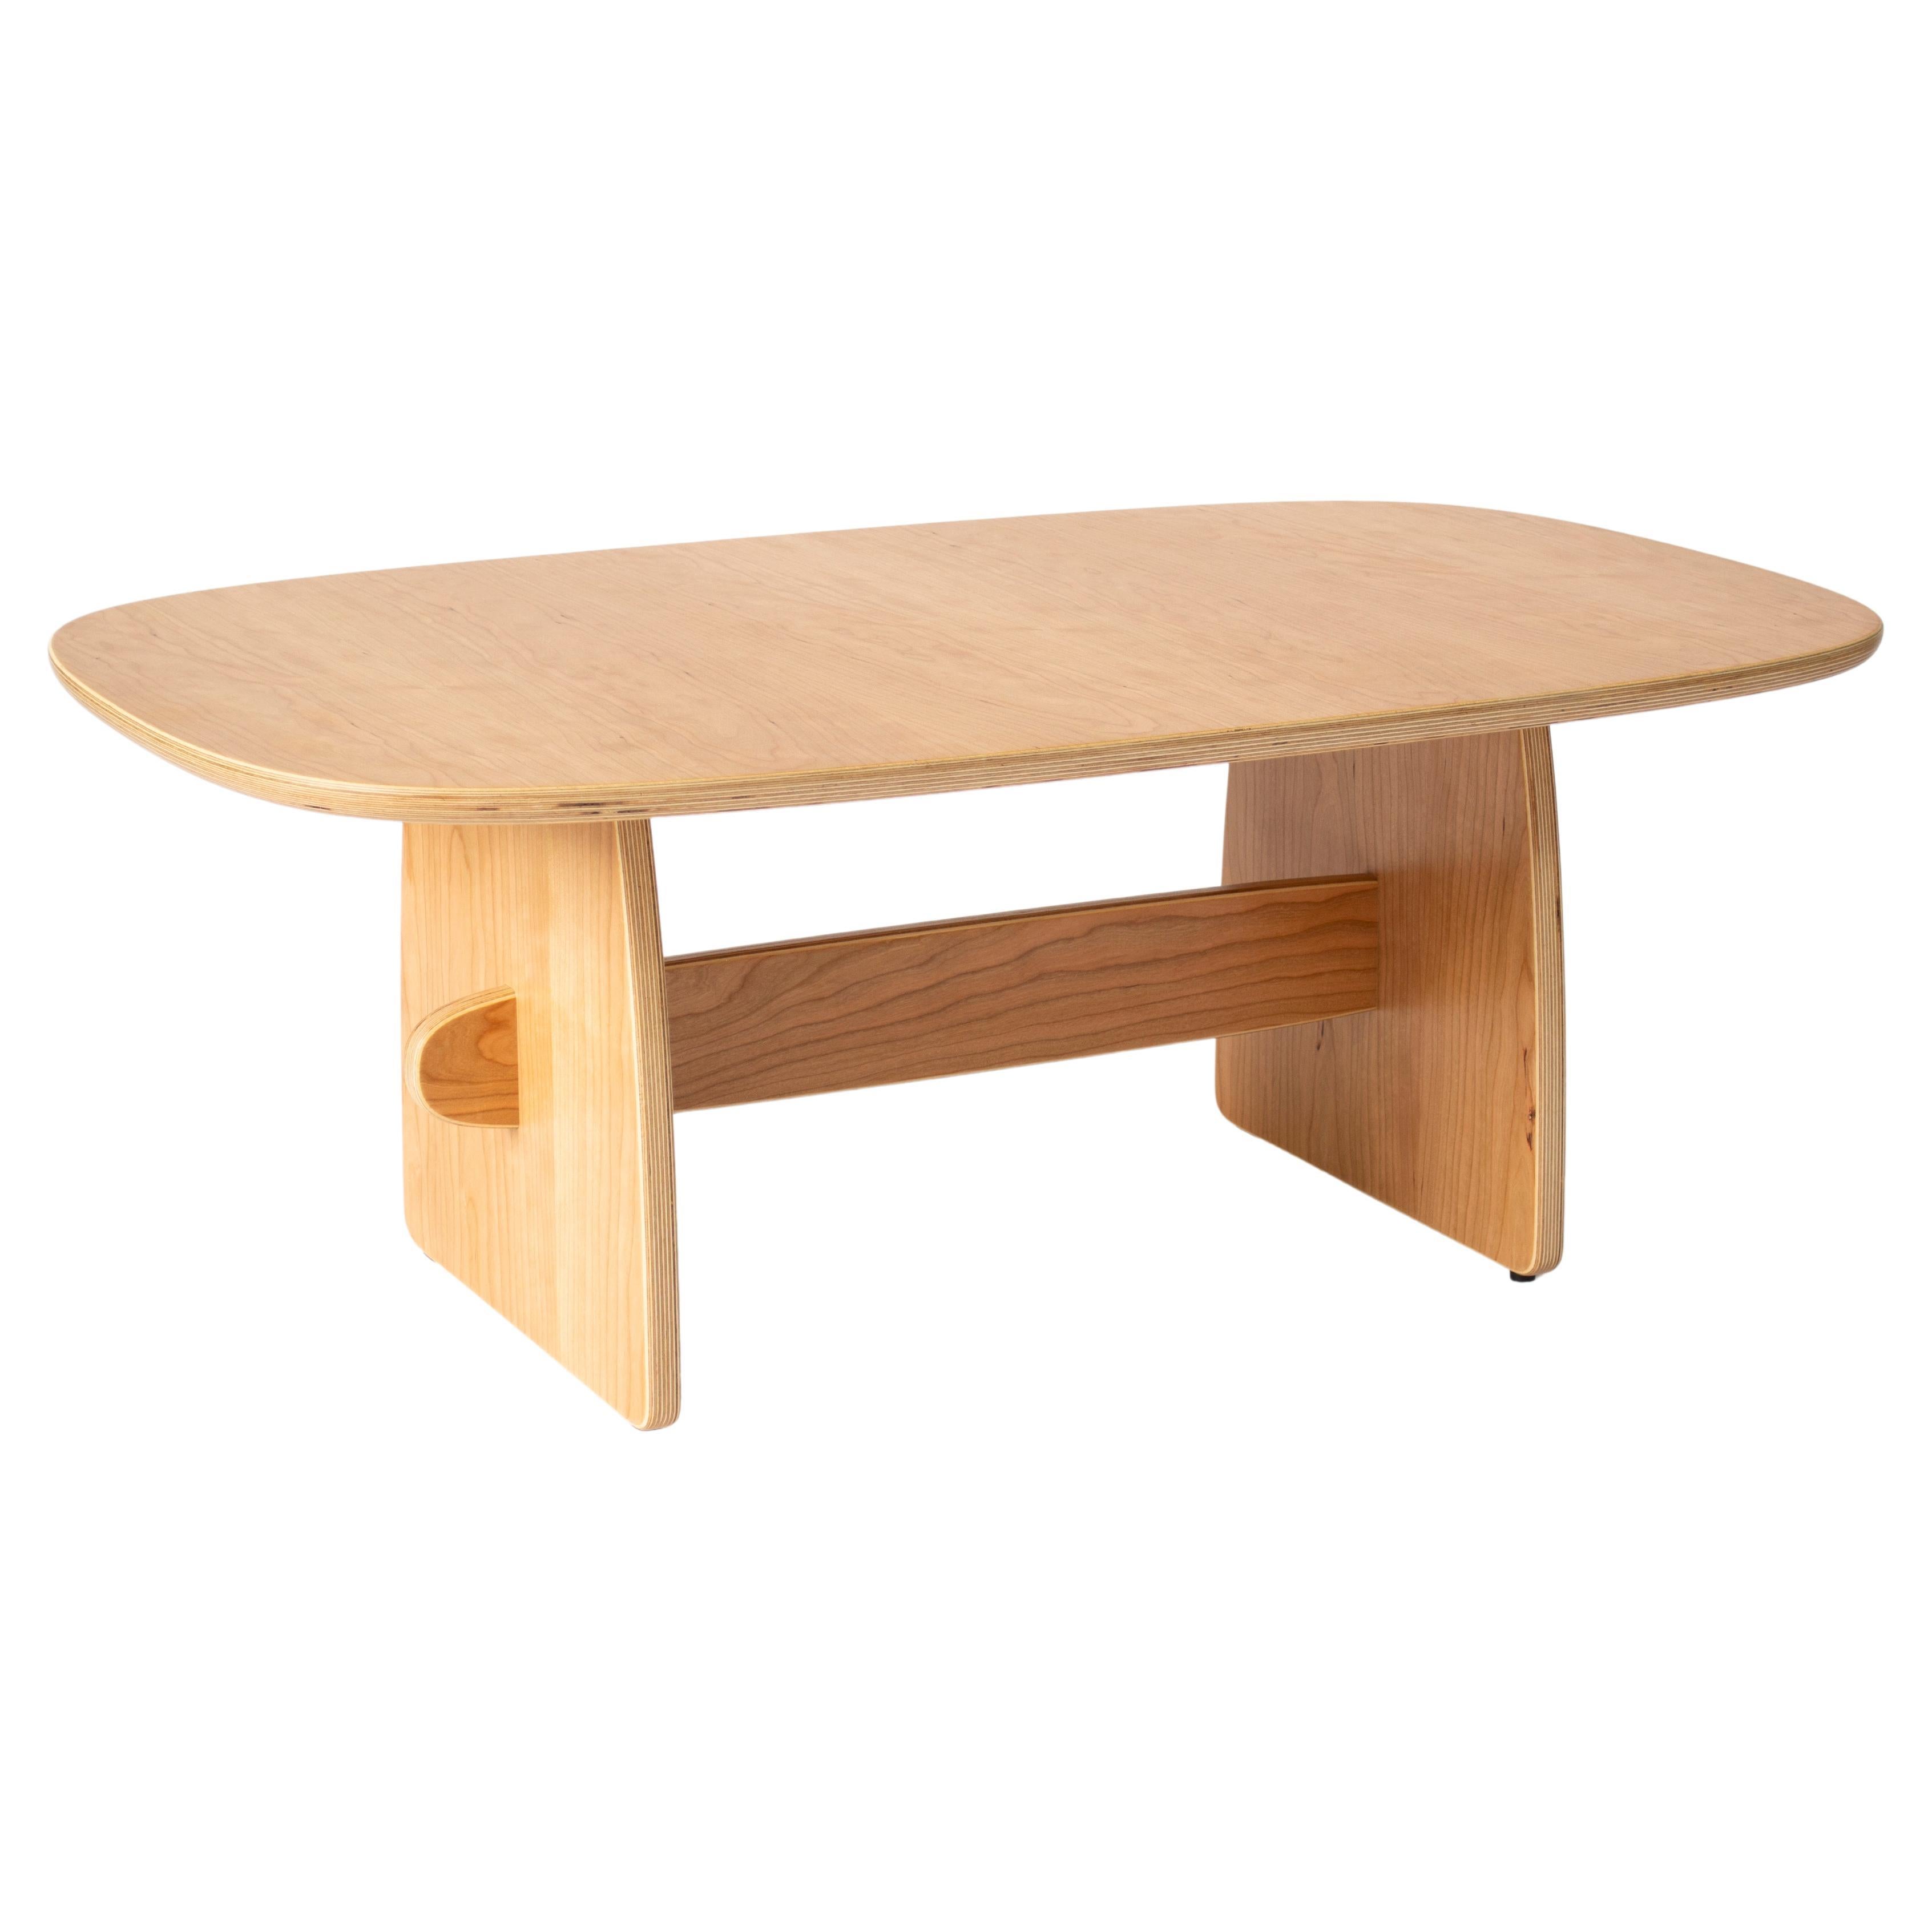 Woodbine coffee table in cherry veneer hardwood plywood by KLN Studio For Sale